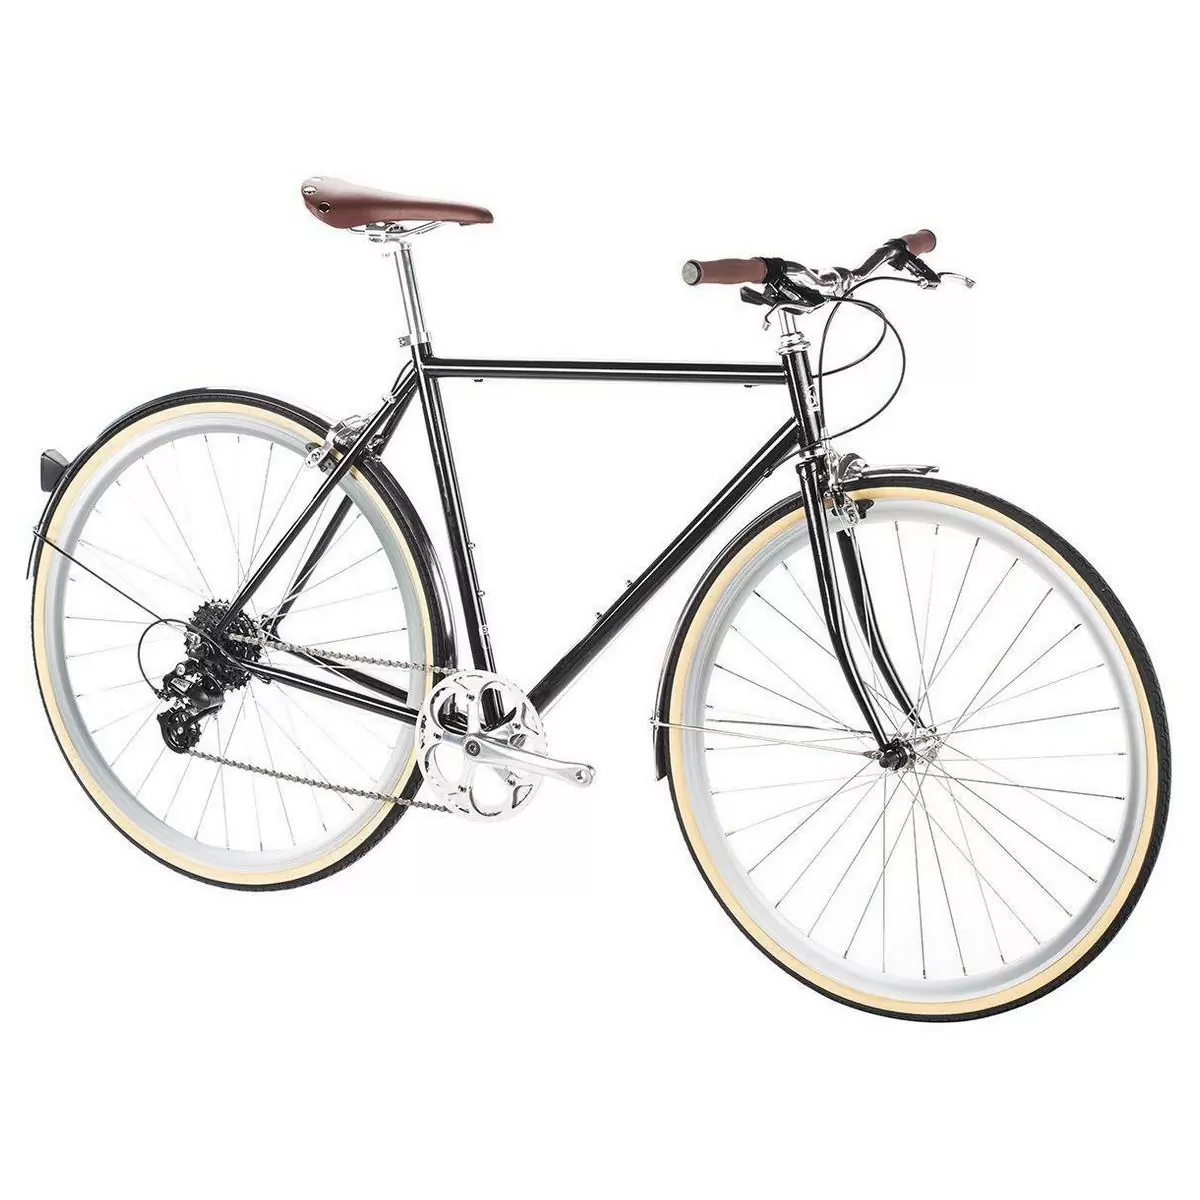 City bike ODYSSEY 8spd Delano black medium 54cm #1